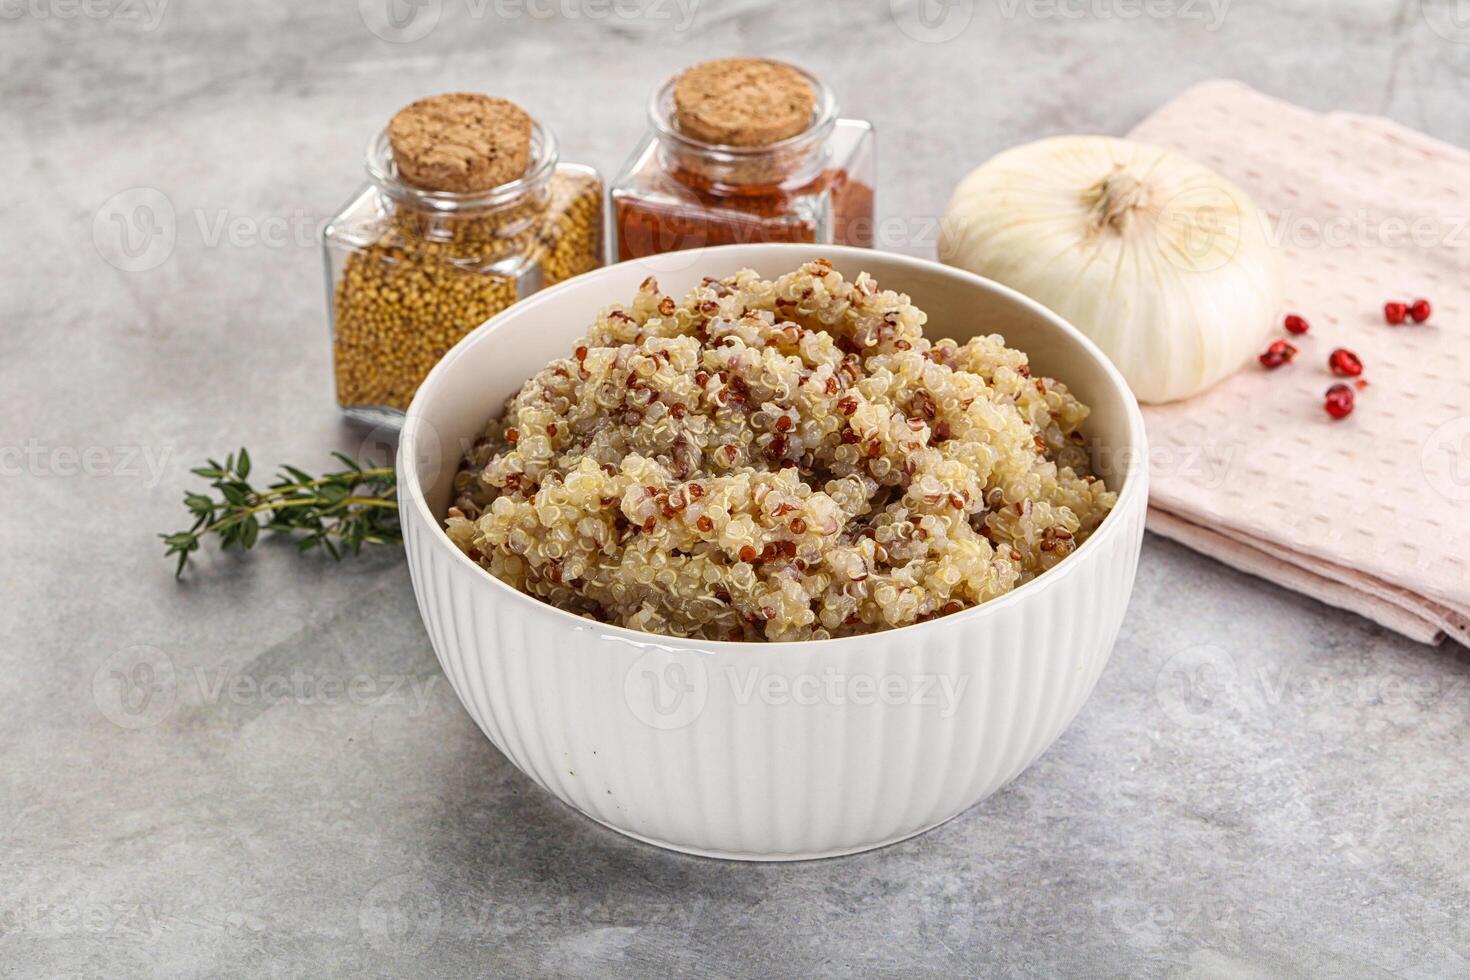 végétalien cuisine - bouilli quinoa céréale photo